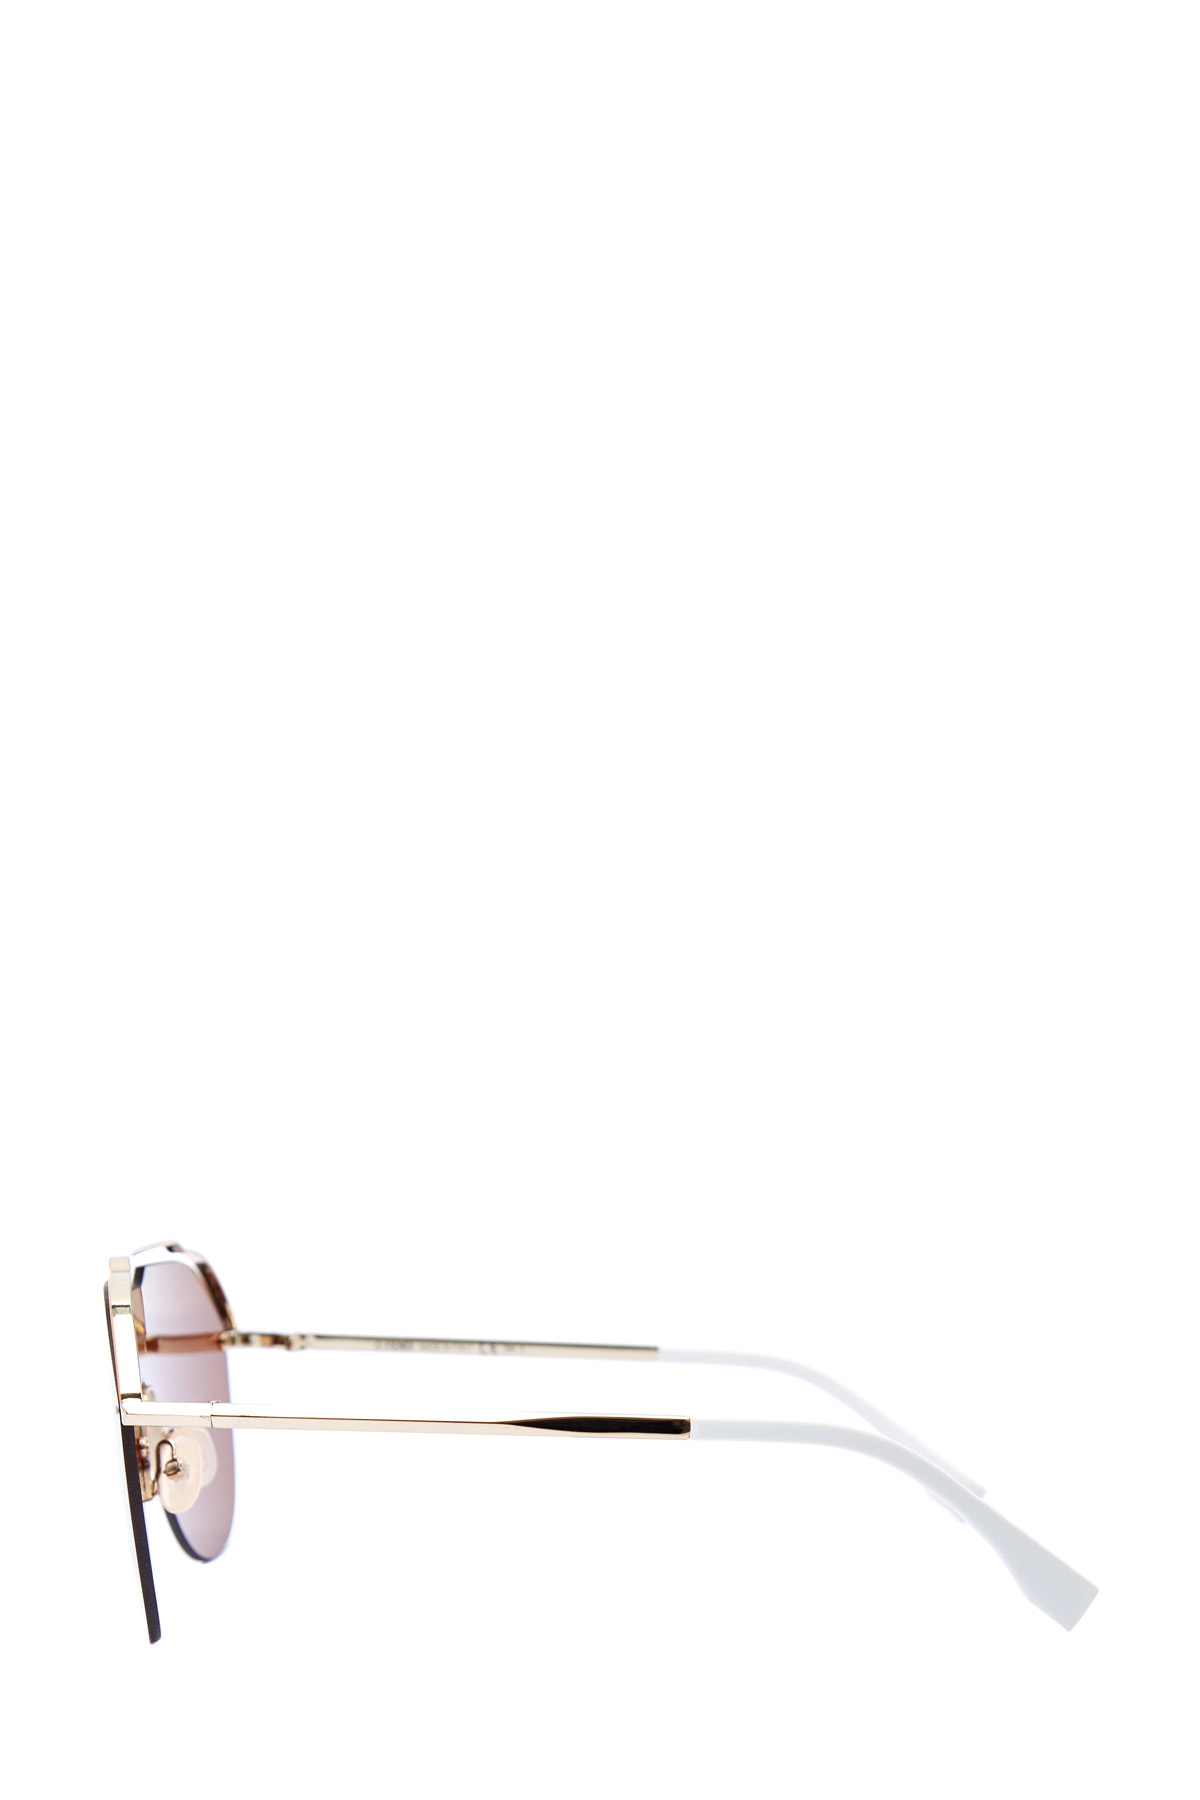 Очки-маска в графичной металлической оправе авиатор FENDI (sunglasses), цвет коричневый, размер XS;S - фото 4